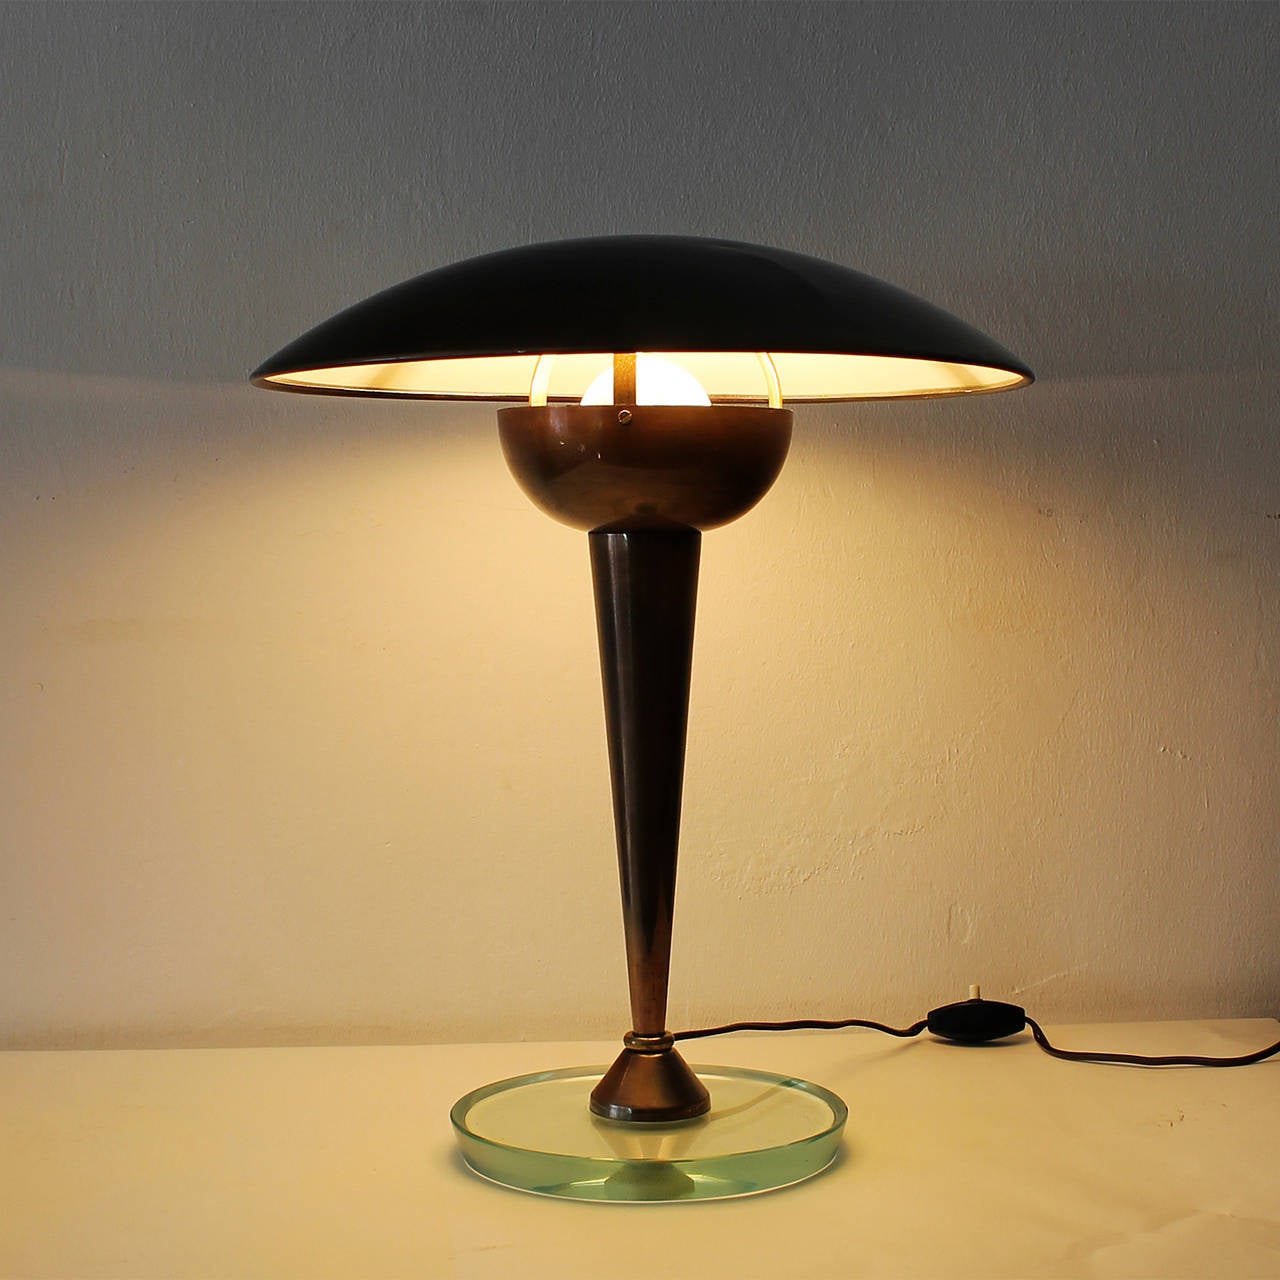 Italian Art Deco Desk Lamp by Stilnovo